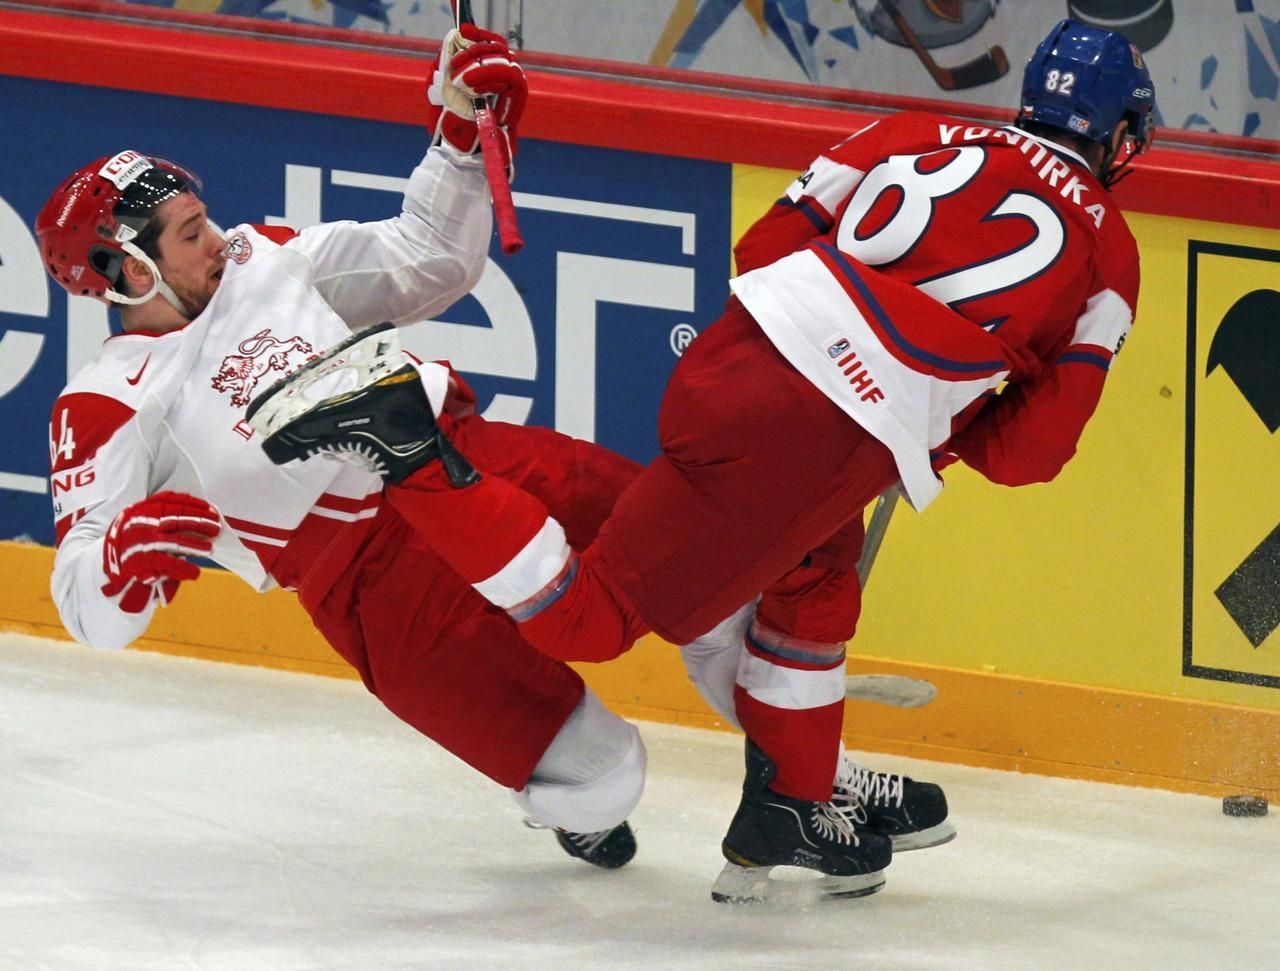 MS v hokeji 2012: Česko - Dánsko (Hardt, Vondrka)